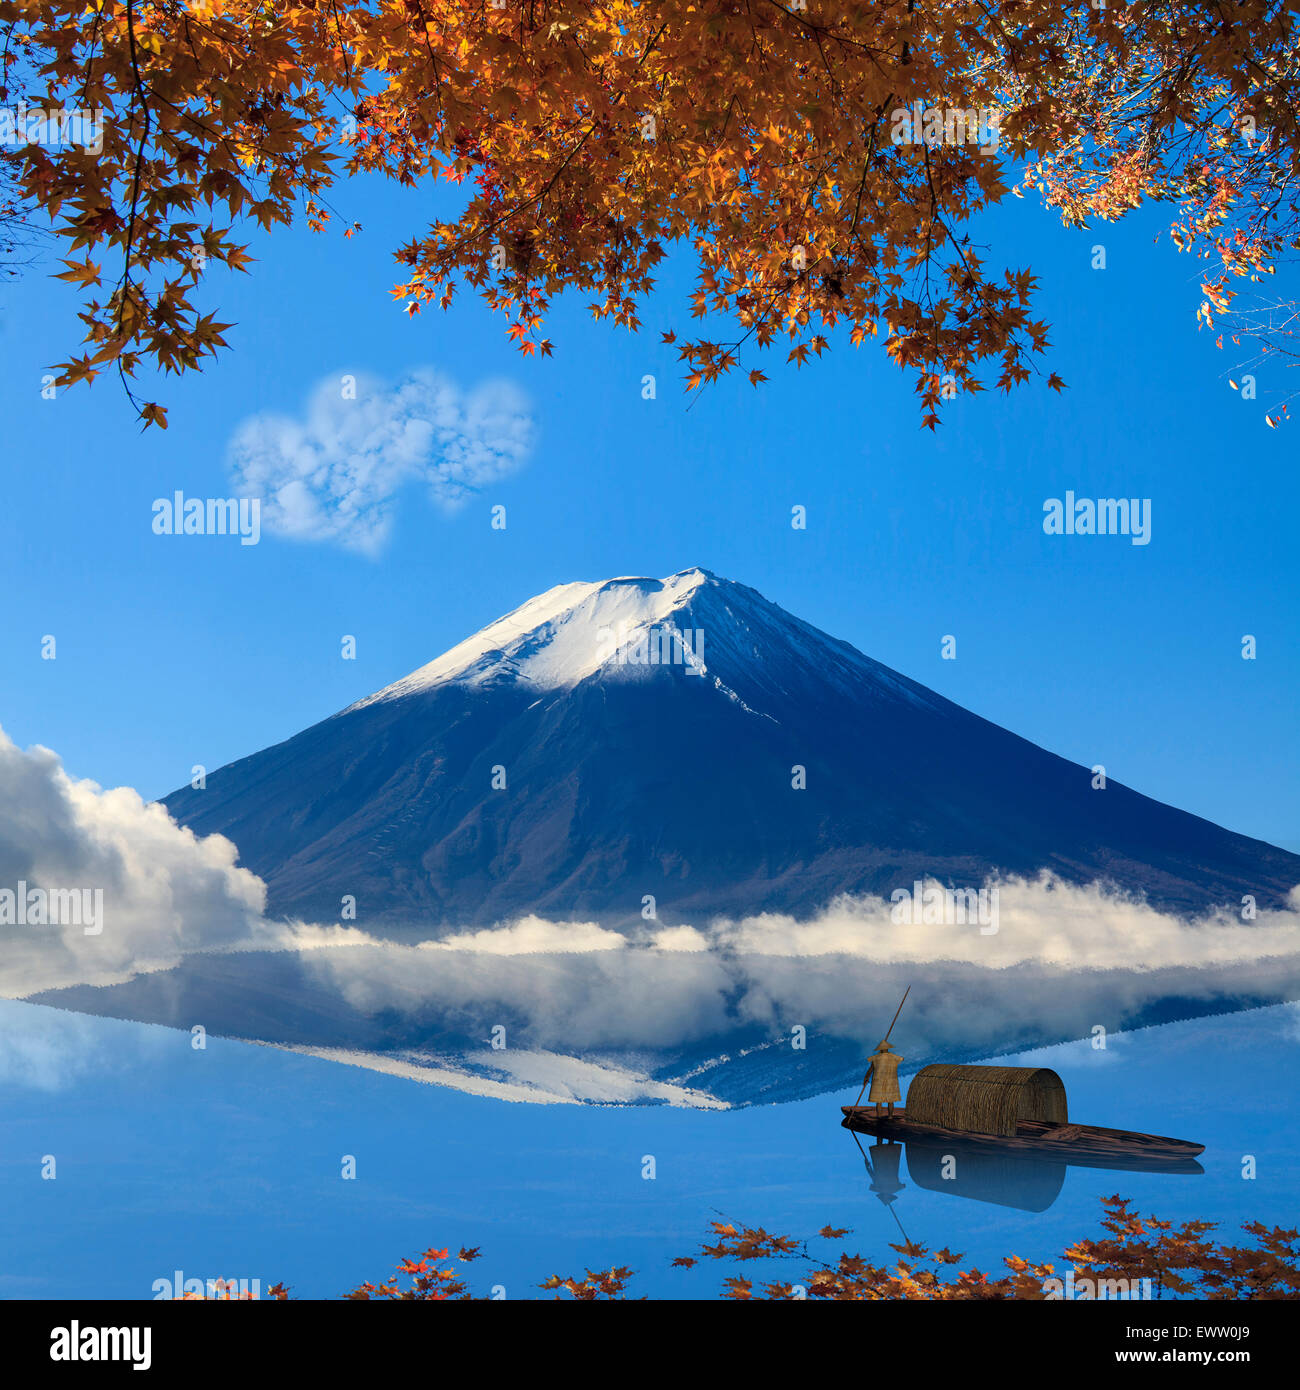 Immagine della montagna sacra di Fuji in background in Giappone per adv o altri usi Foto Stock